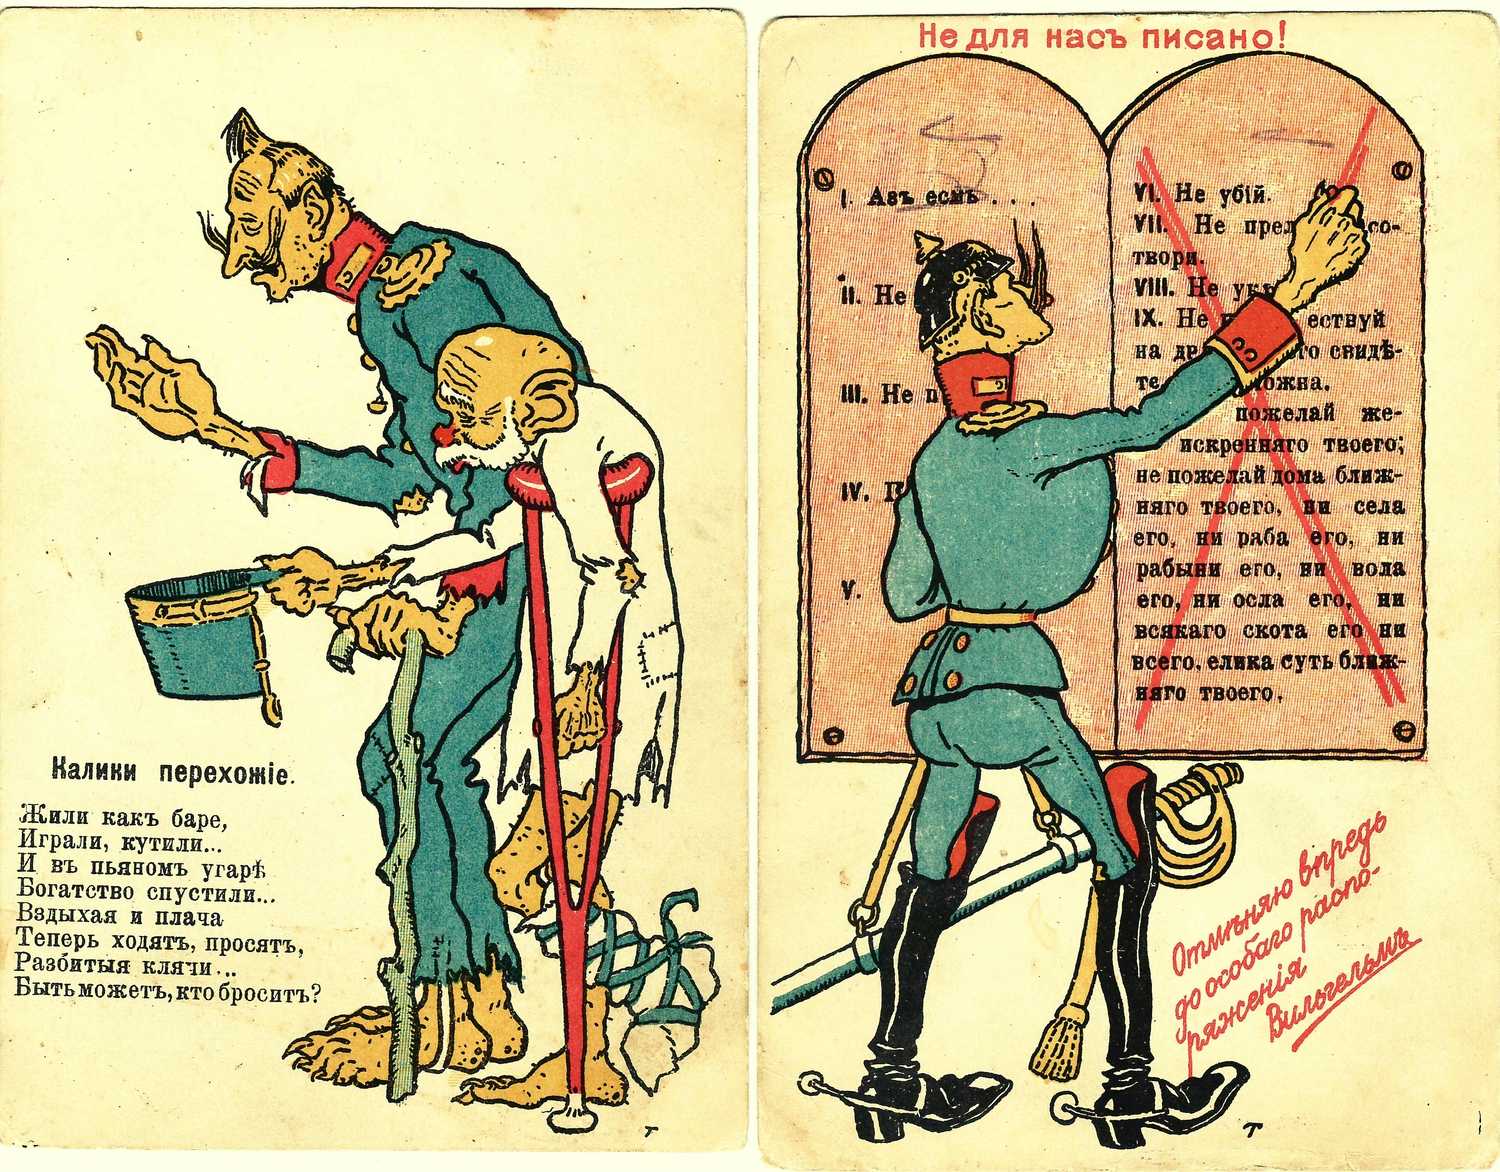 4 пропагандистские открытки. Издание «Буссель и Кноринг», 1910-е годы.